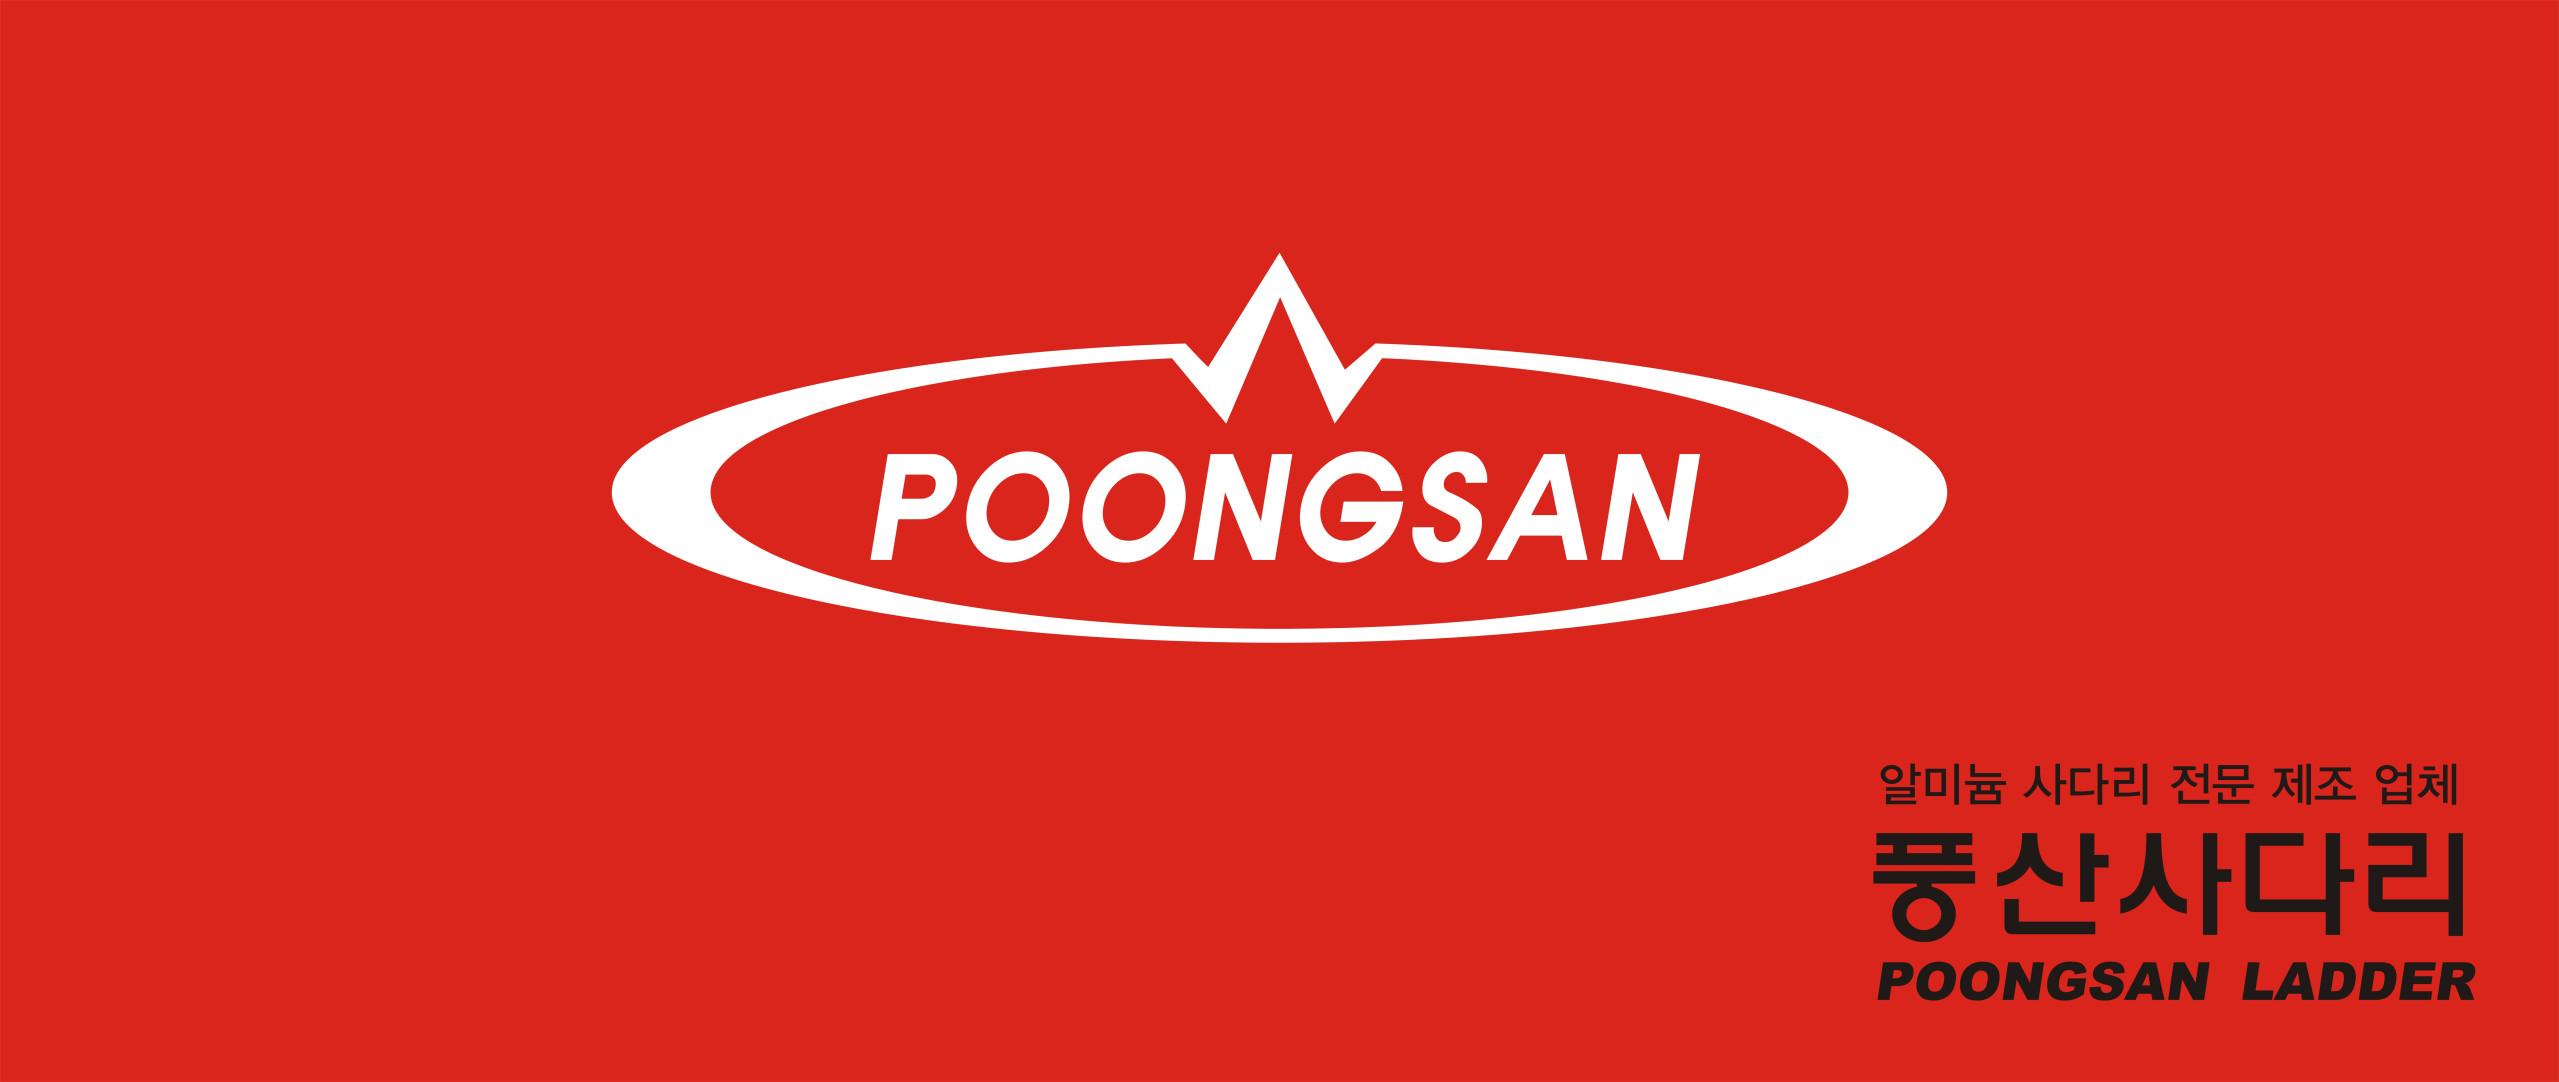 Tuyển đại lý thang nhôm Poongsan tại Đà Nẵng